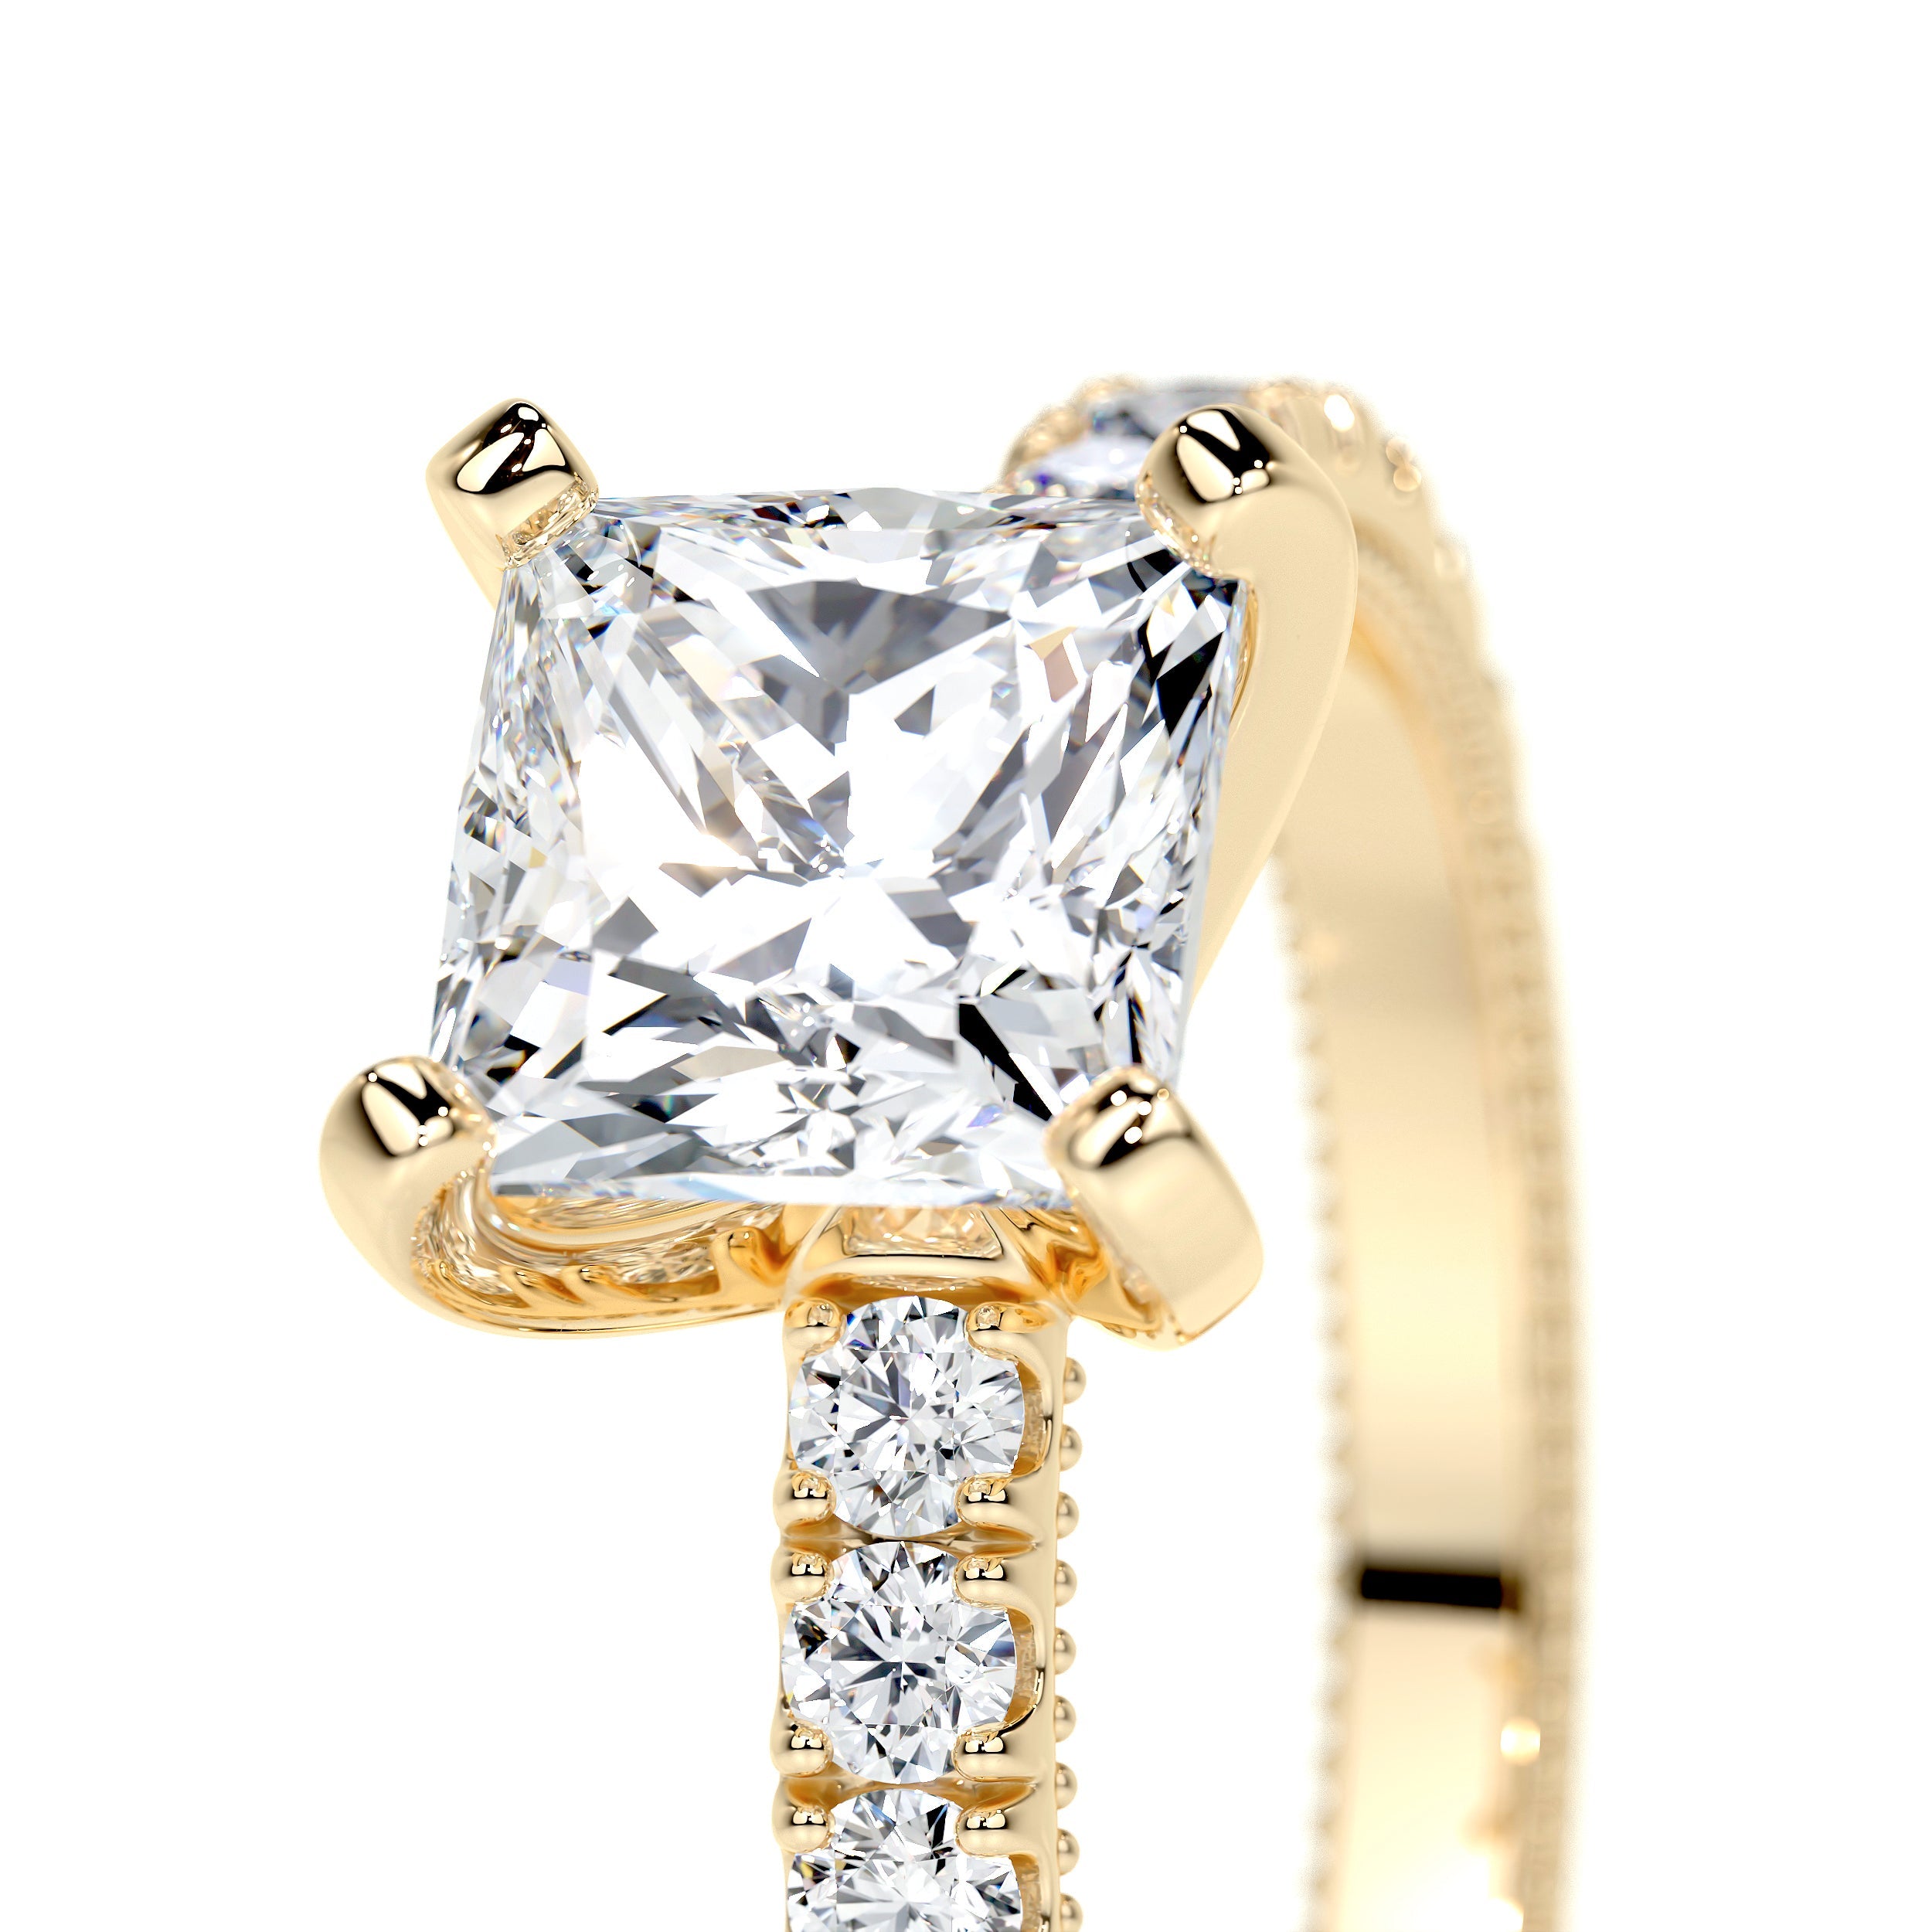 Blair Lab Grown Diamond Ring   (2 Carat) -18K Yellow Gold